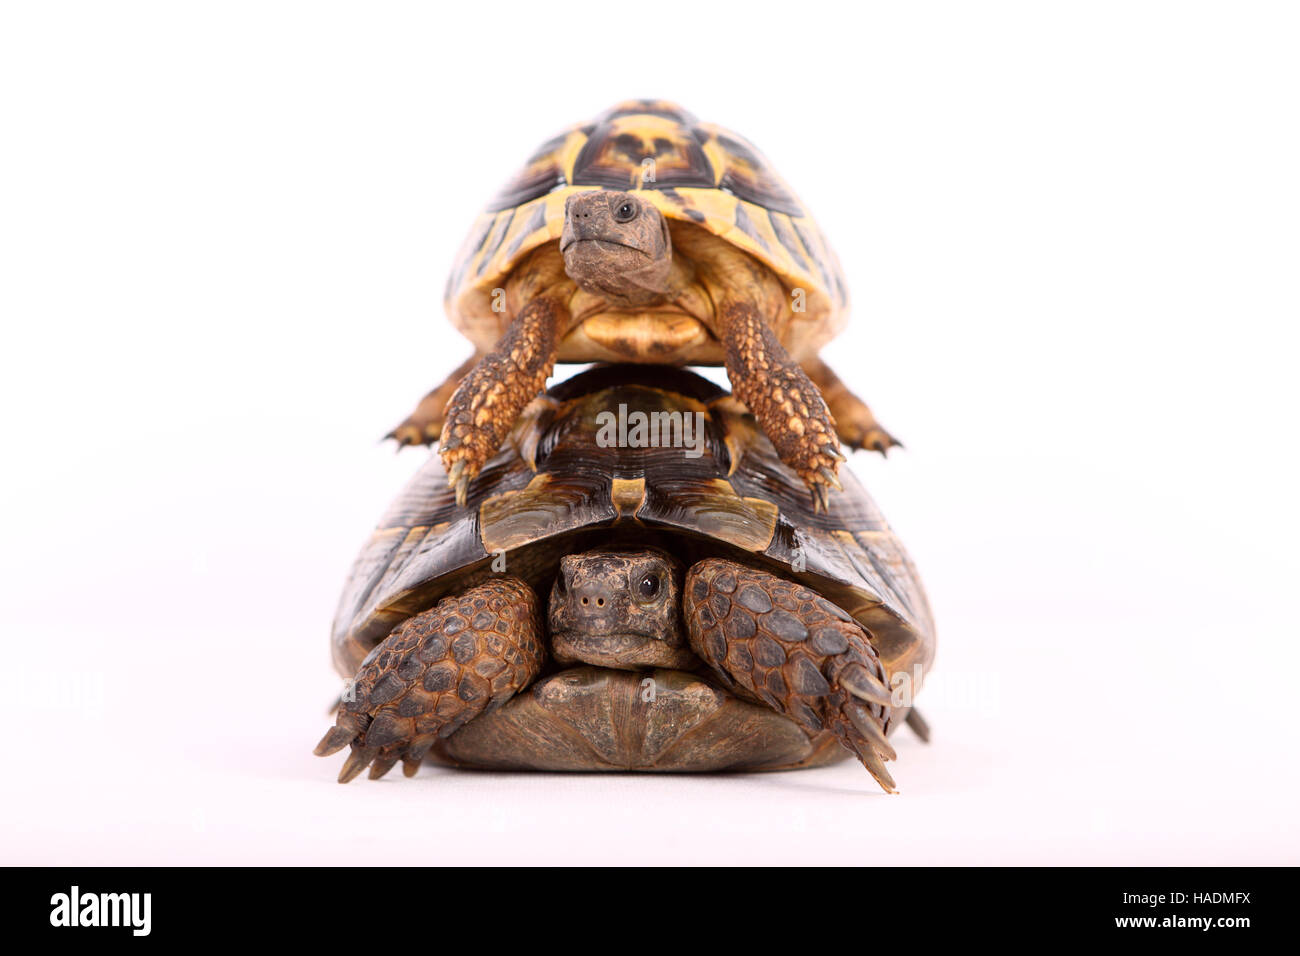 Hermanns Schildkröte (Testudo Hermanni) auf dem Carapax einer mediterranen Sporn-thighed Tortoise Griechische Schildkröte (Testudo Graeca). Stockfoto